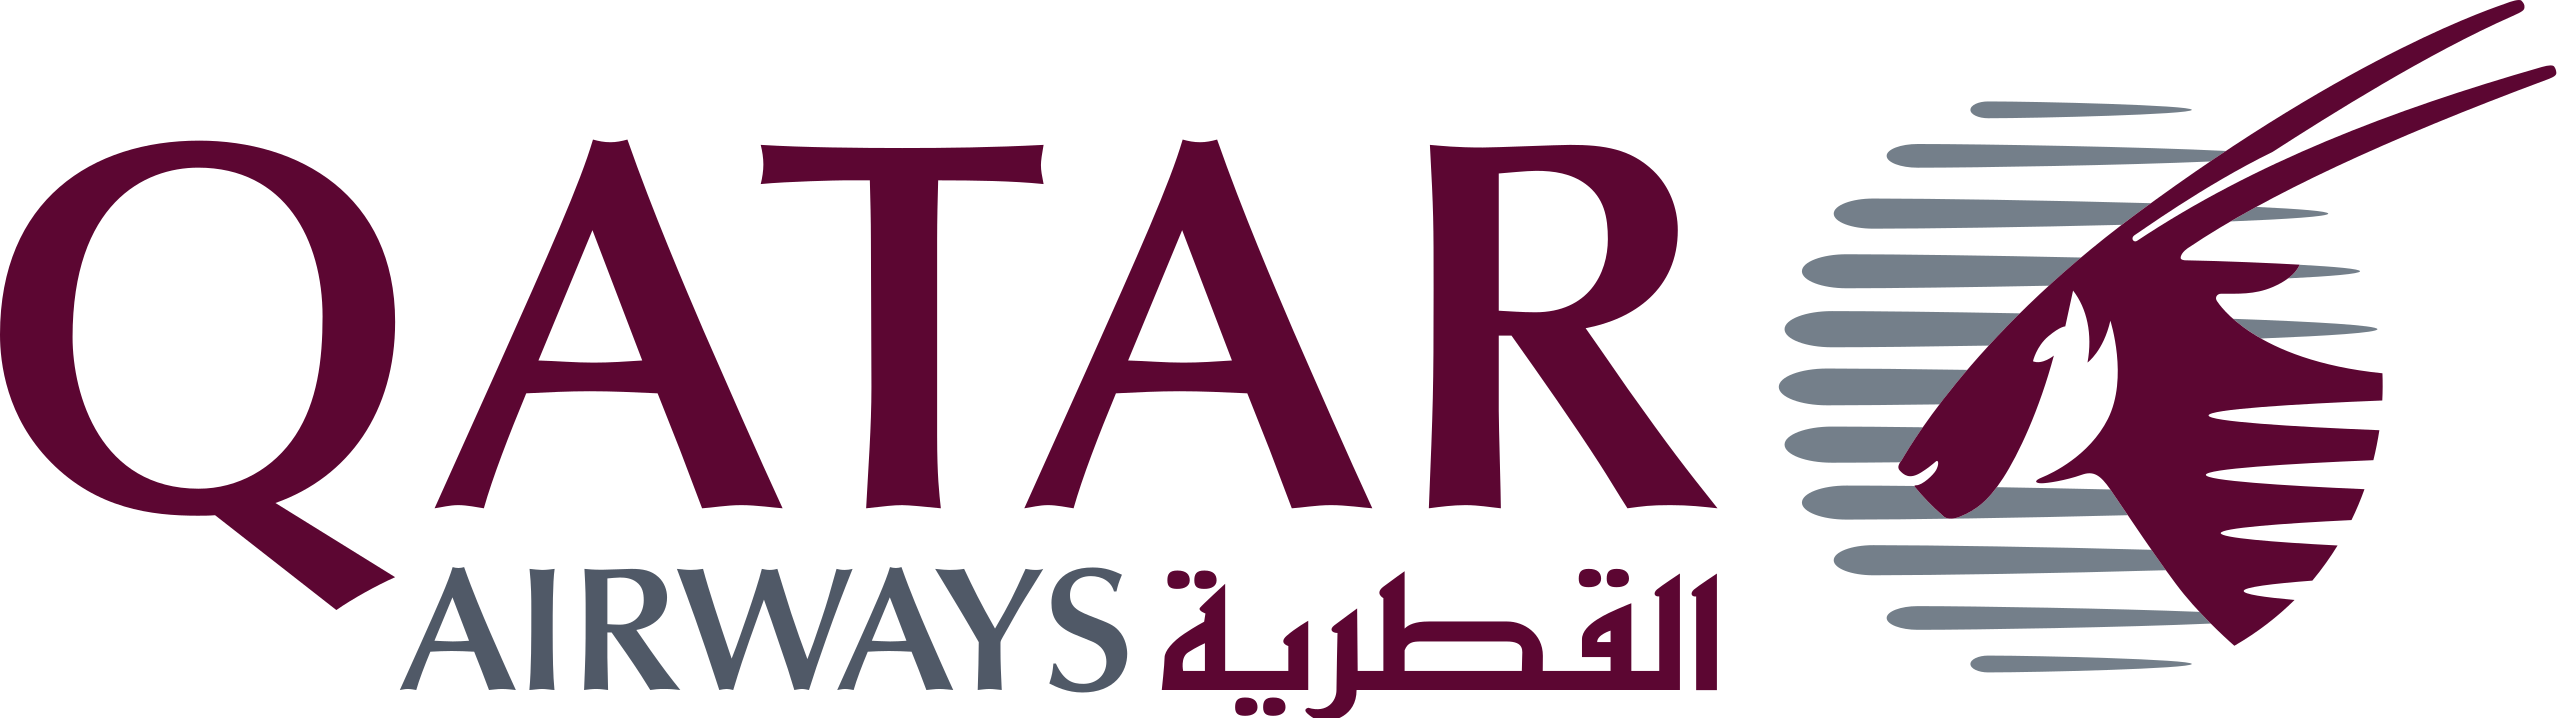 qatar airways kuwait number of customer service